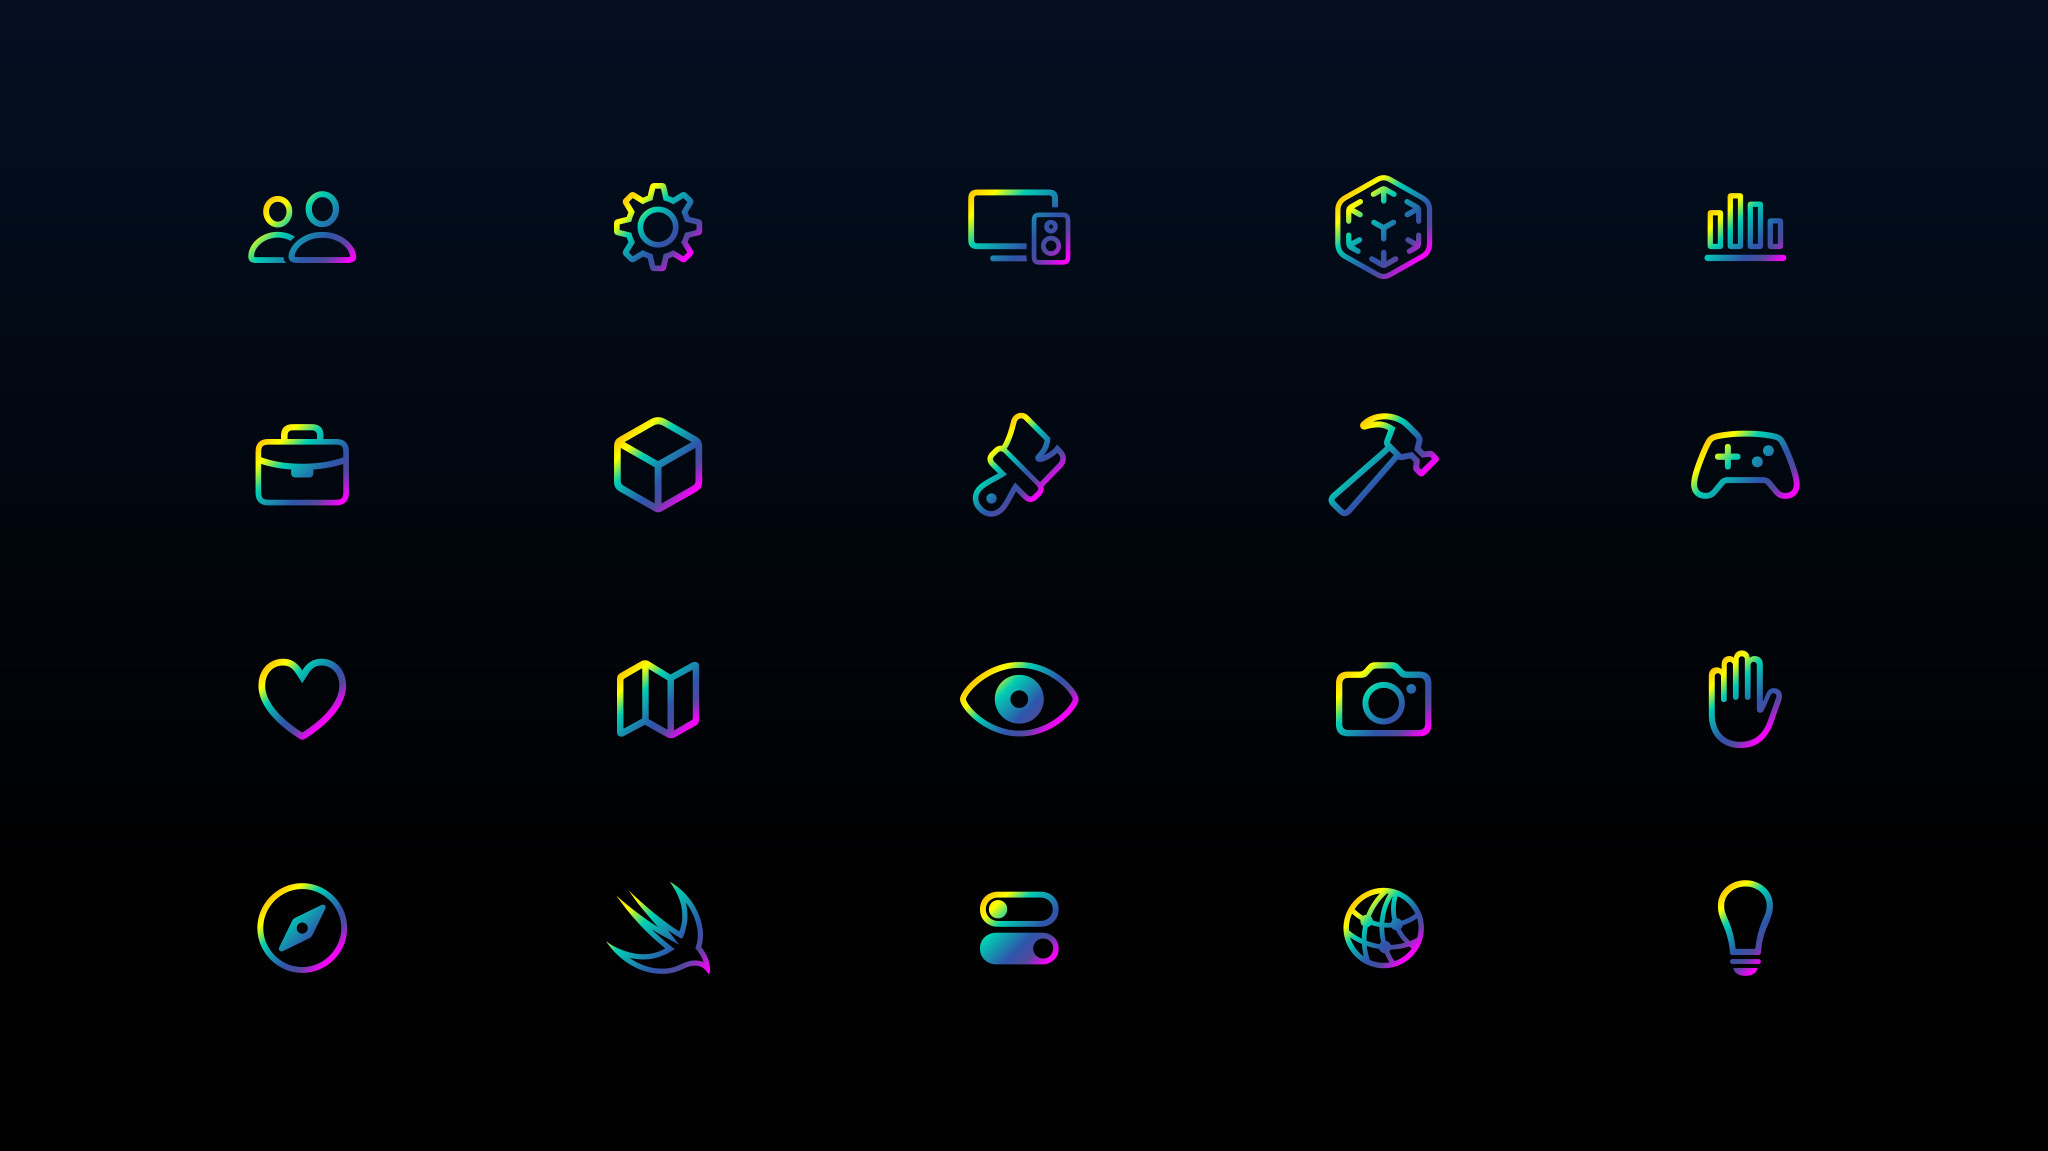 代表开发主题的彩虹色图标在黑色背景上排列成四行。